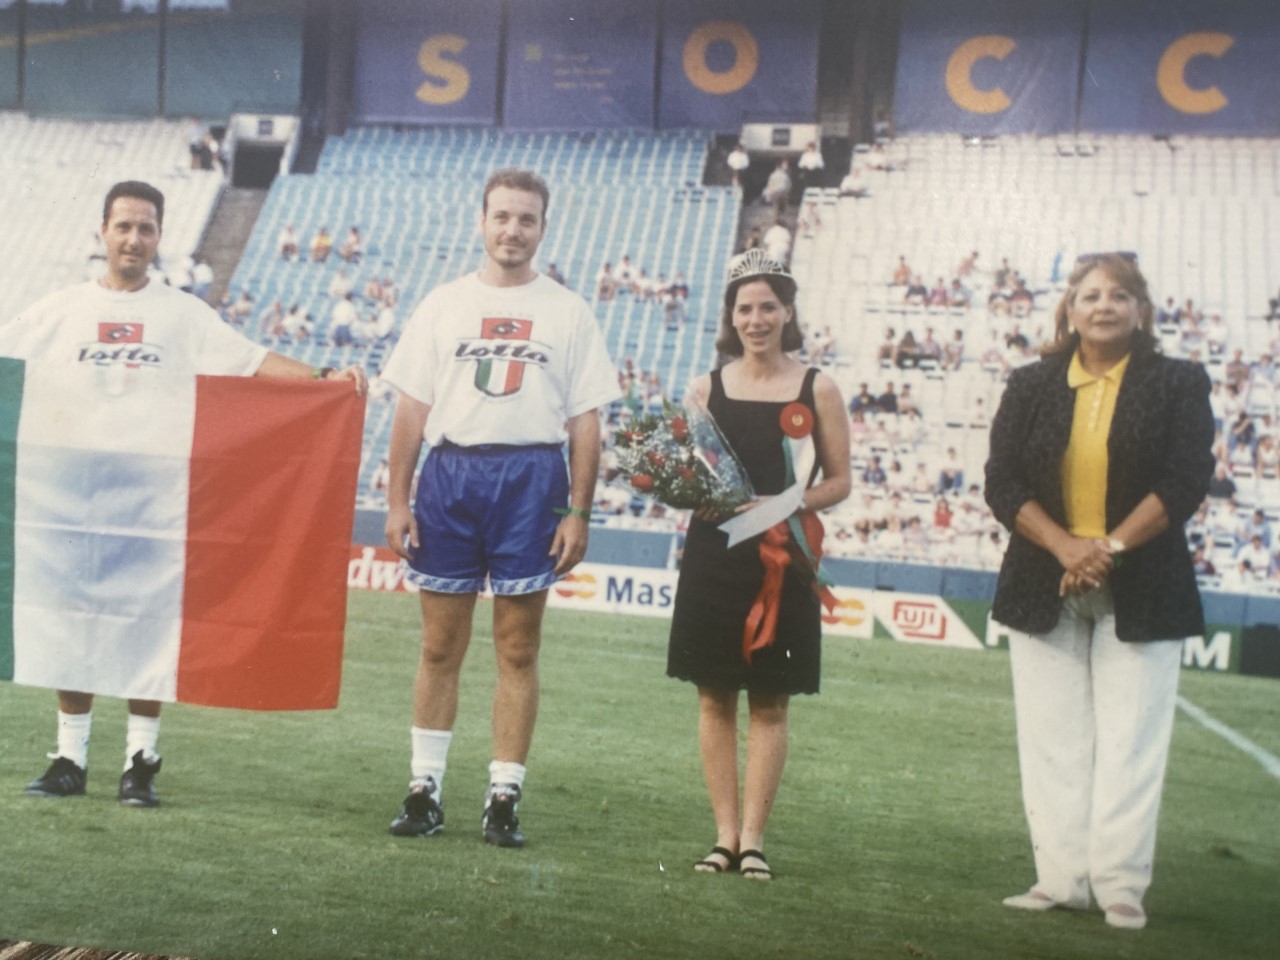 Falleció Bea Beltrán Warrick impulsadora de la Copa Legendarios y del comité de apoyo del Campeonato Mundial FIFA USA 1994